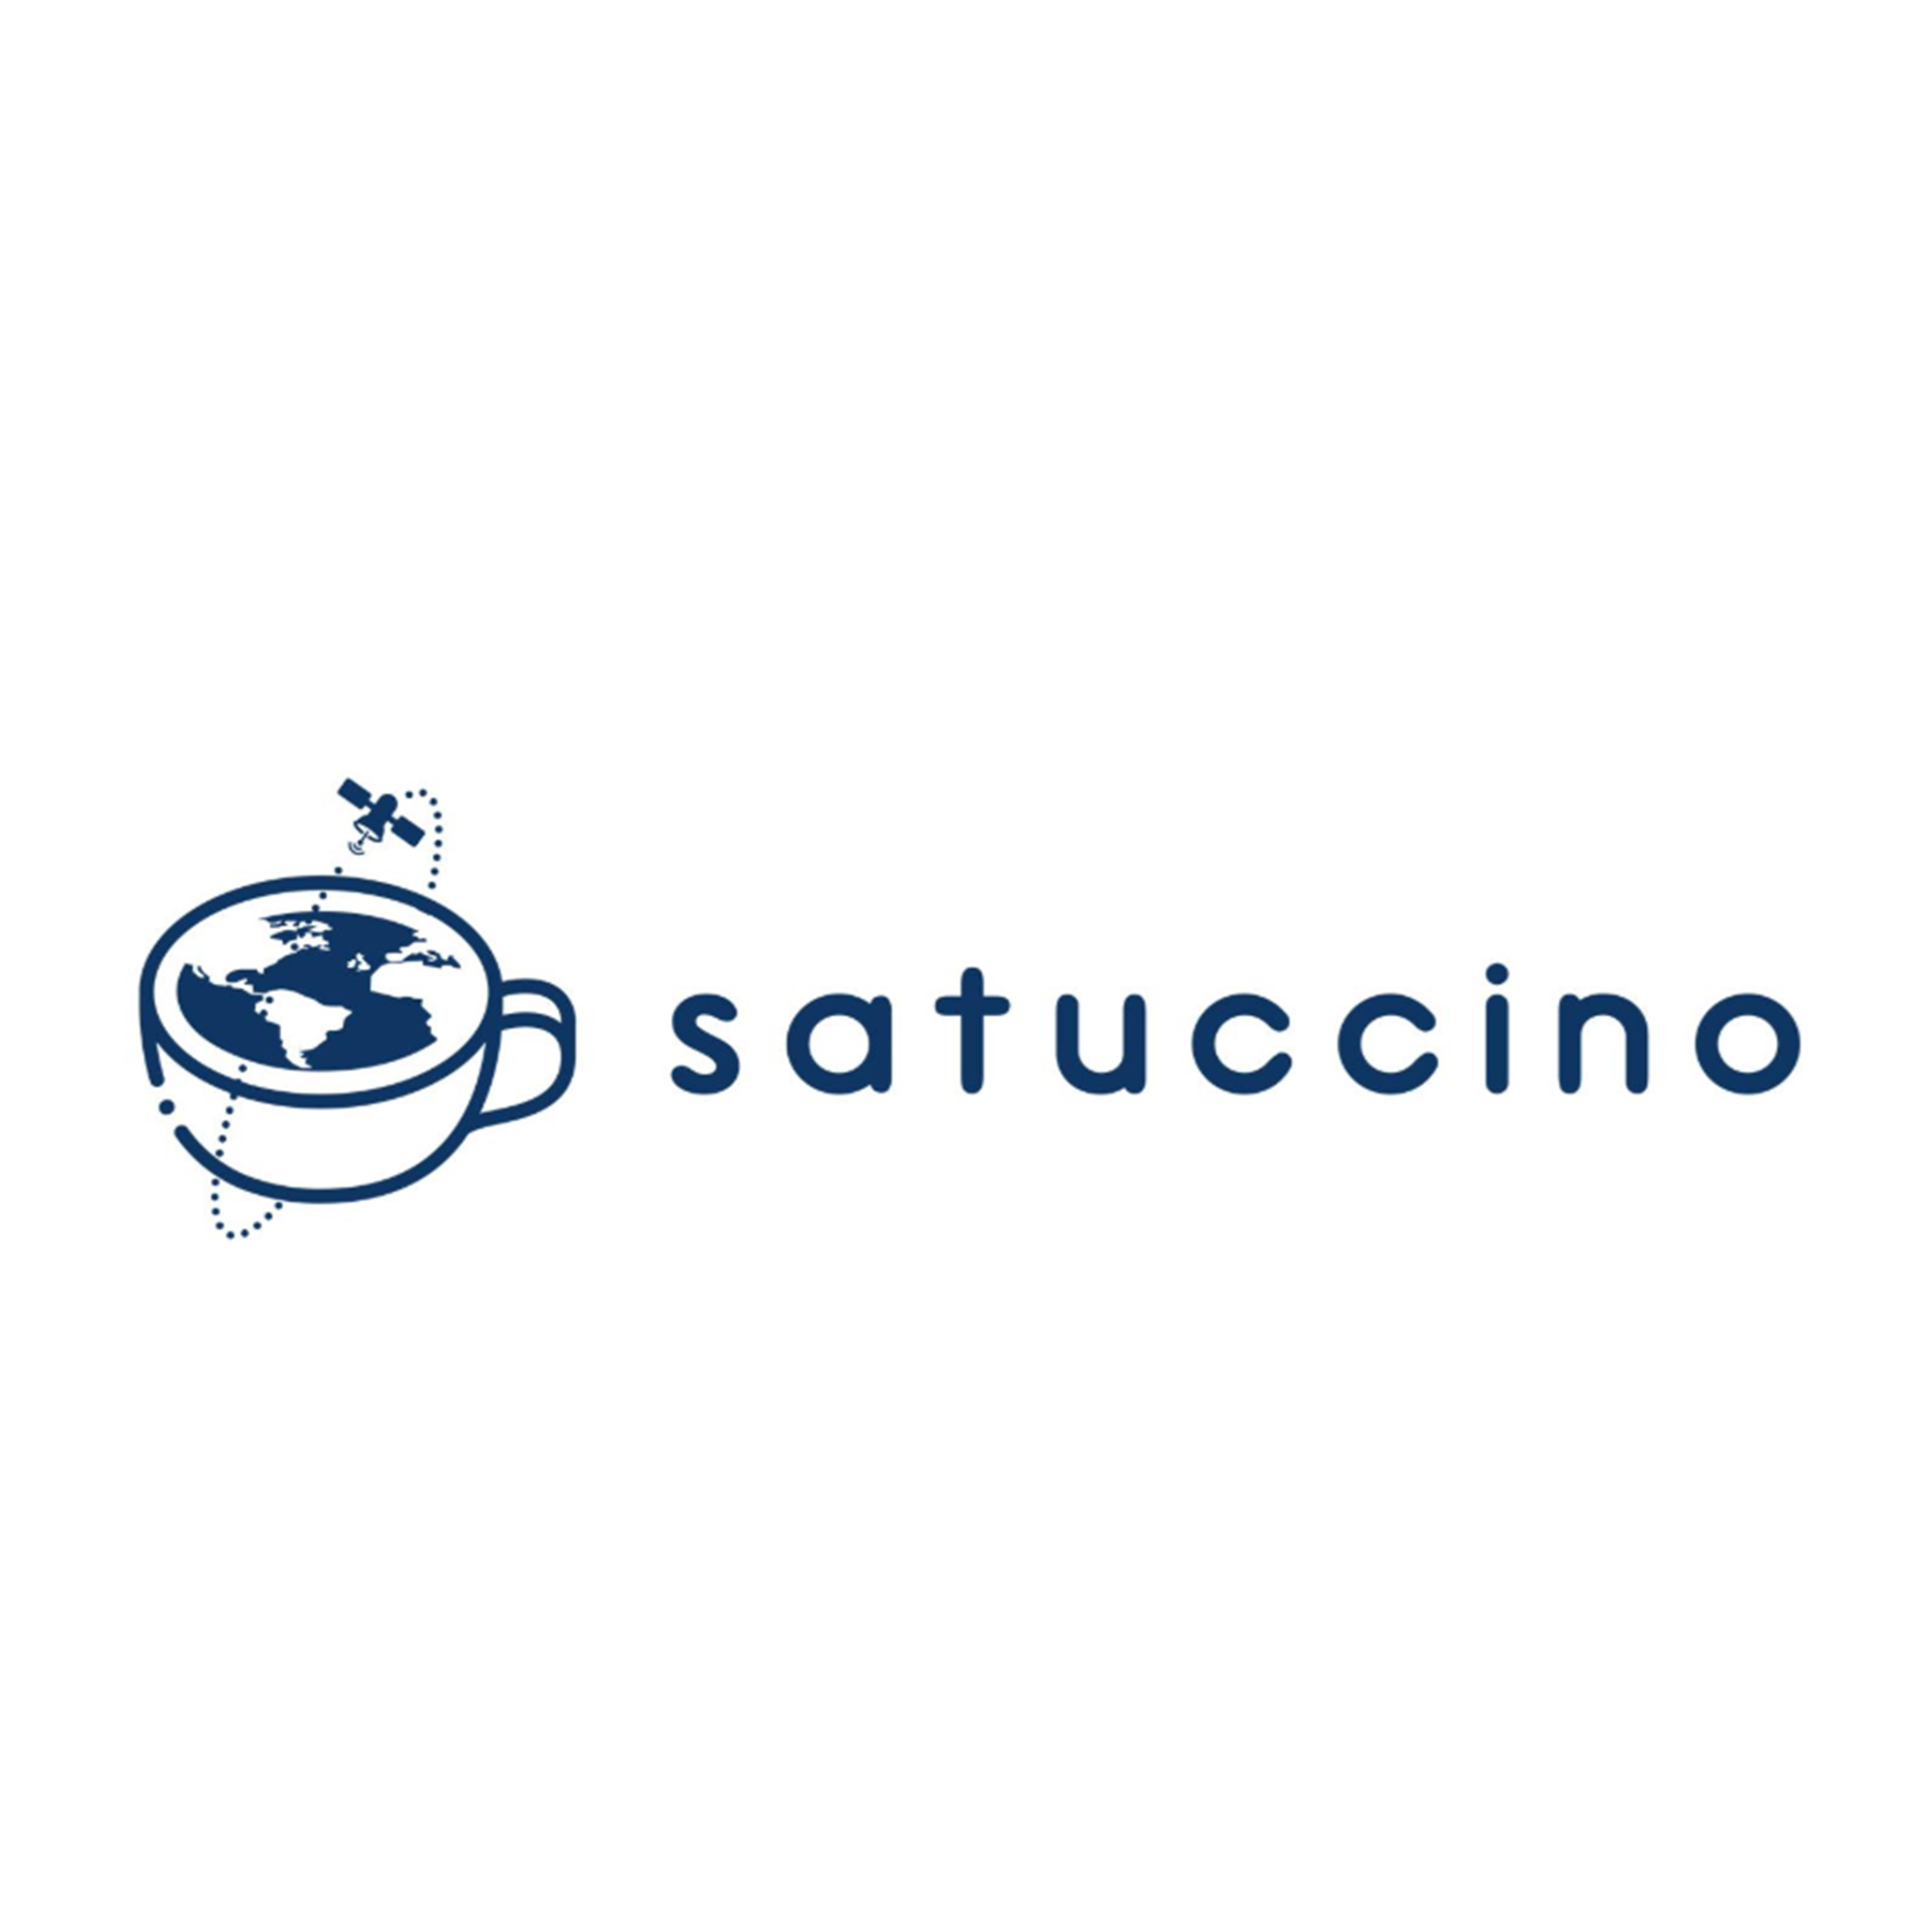 satuccino-square